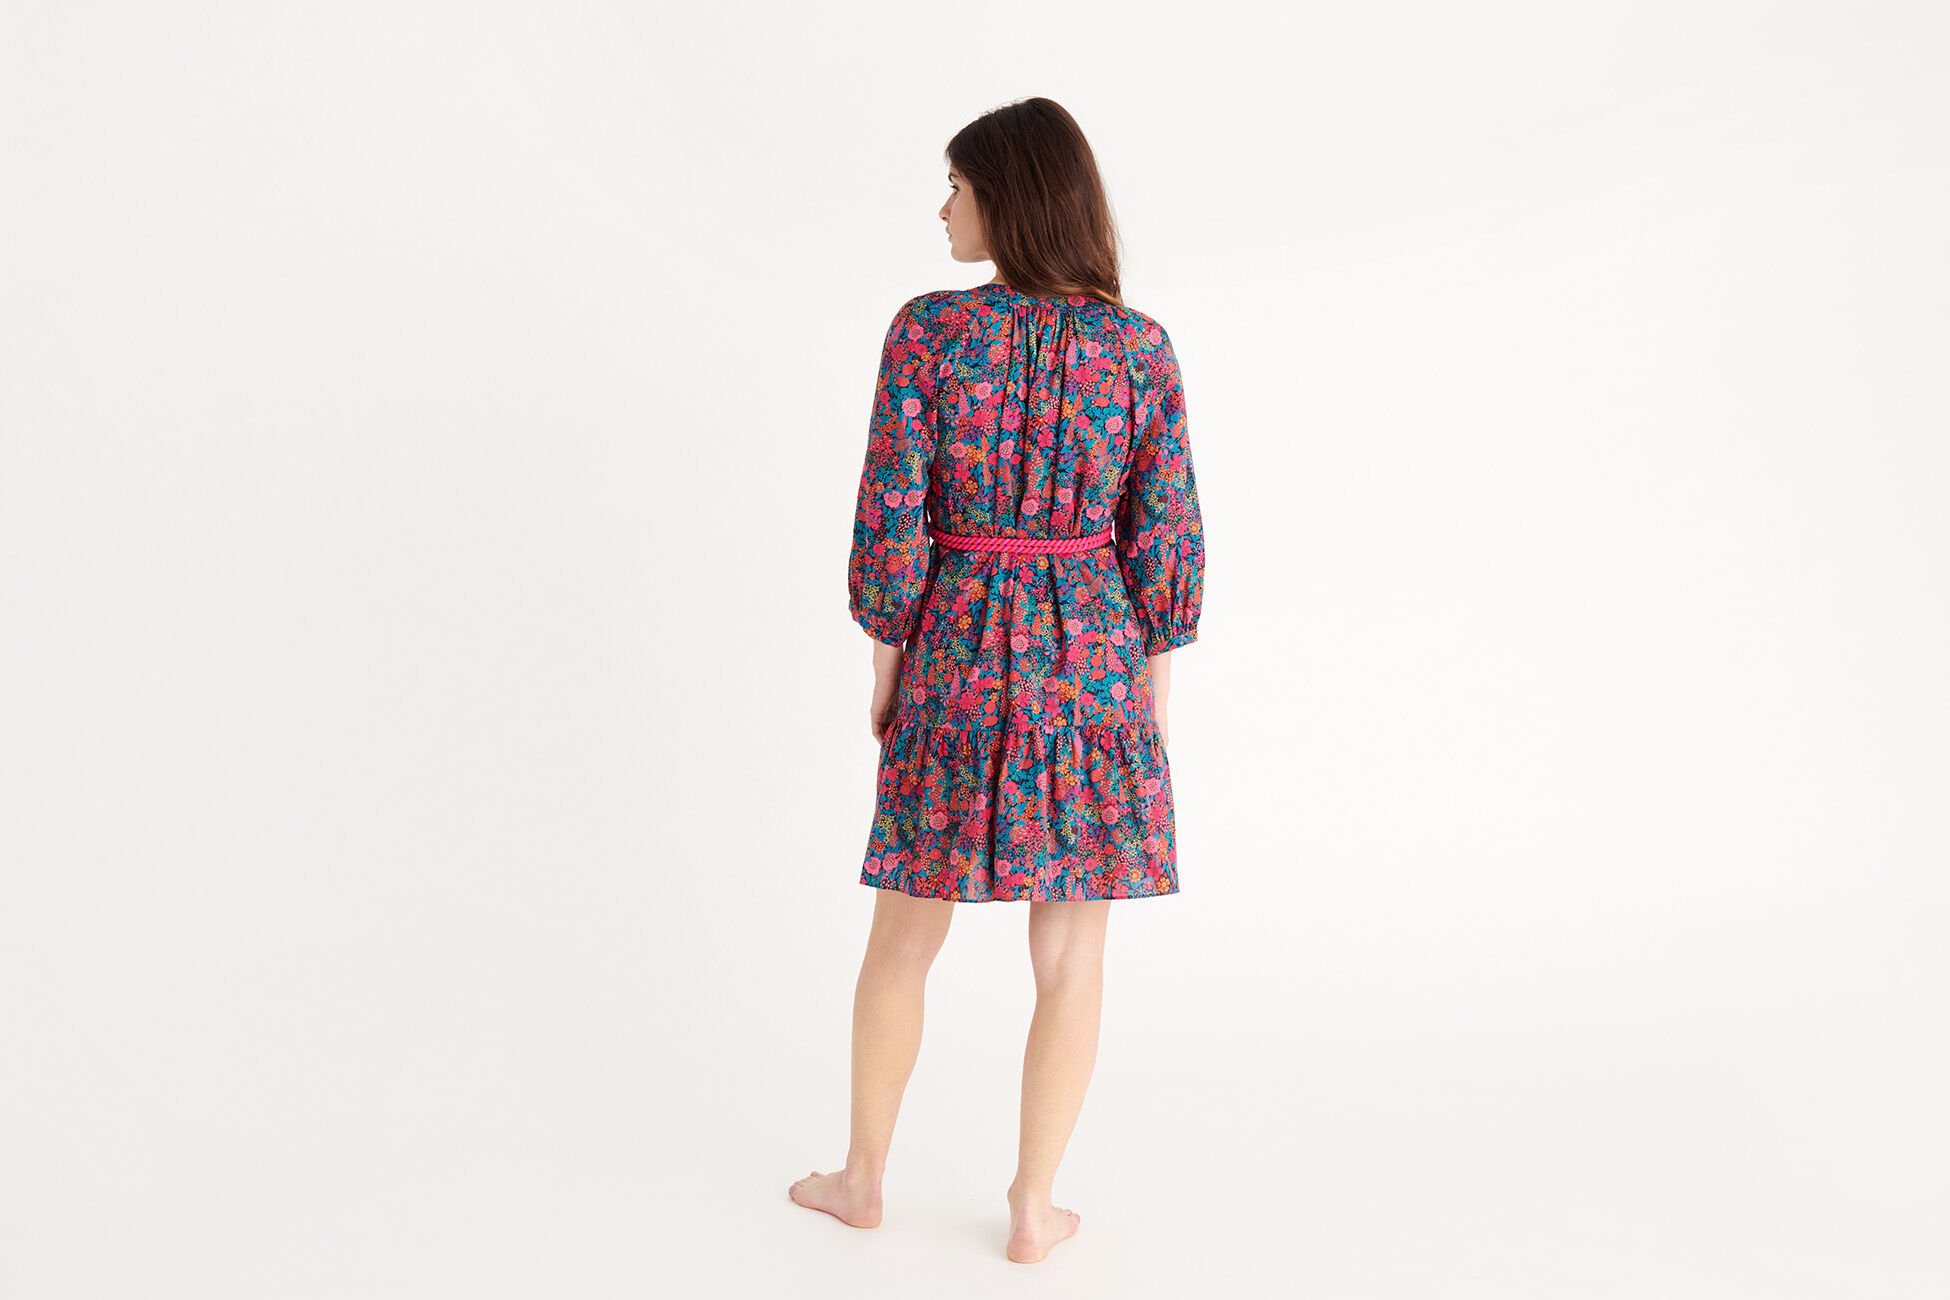 Betty Kurzes Kleid Made with Liberty Fabric Standardansicht NaN